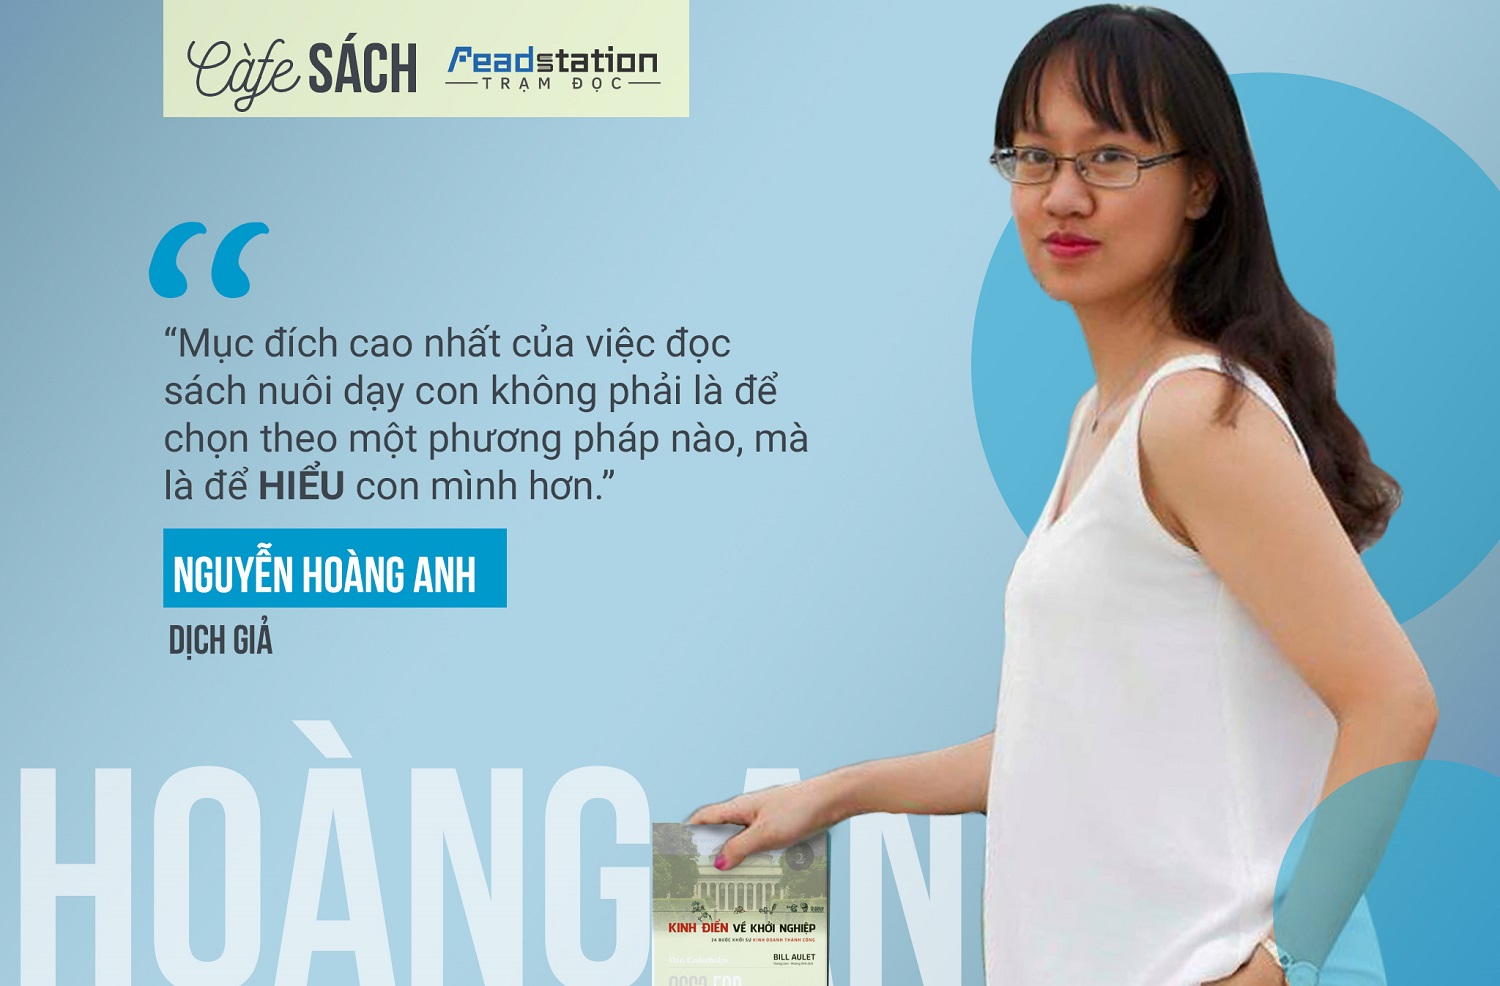 Dịch giả Nguyễn Hoàng Anh: Tôi đọc sách để hiểu con